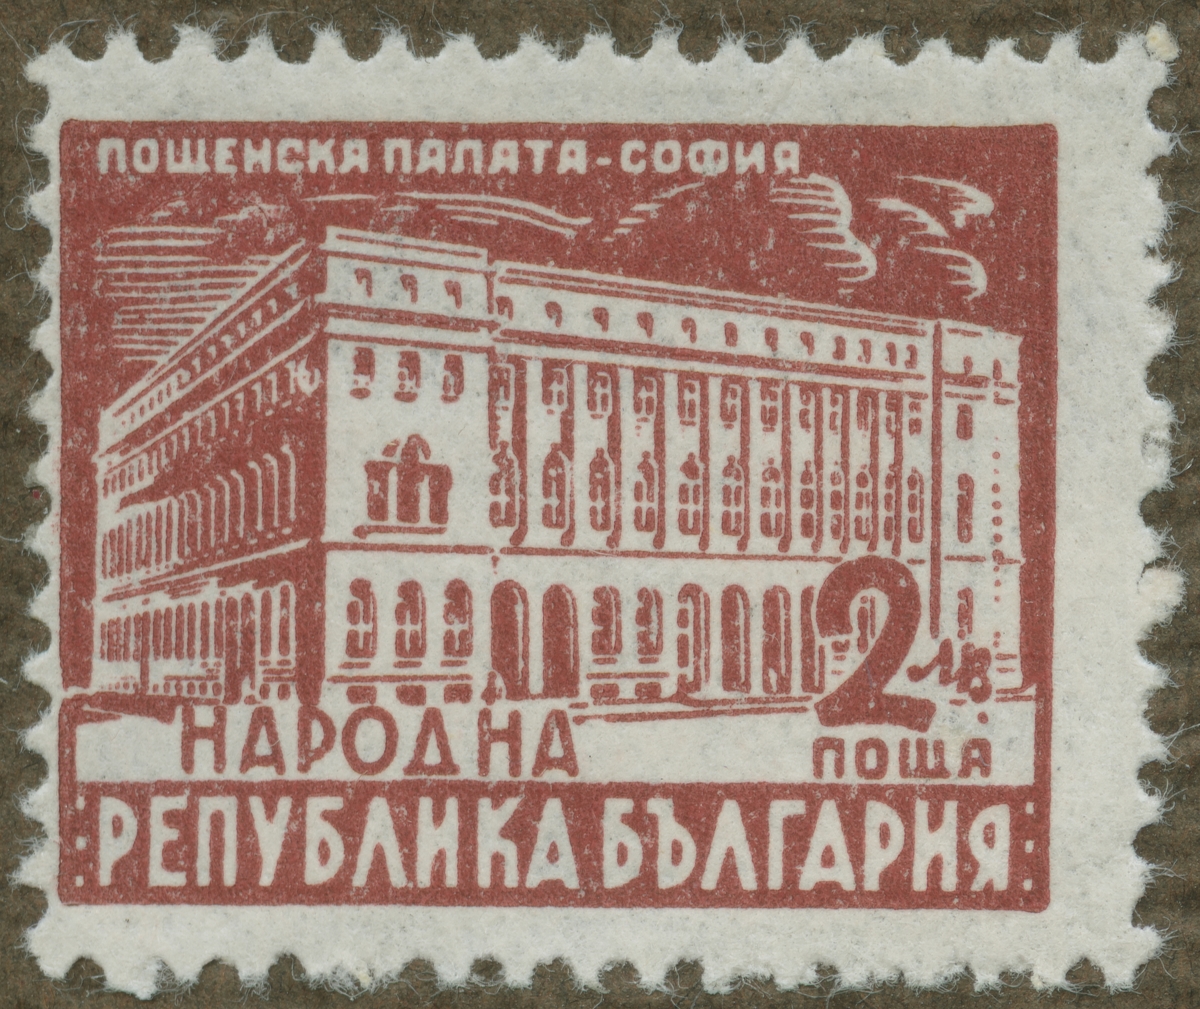 Frimärke ur Gösta Bodmans filatelistiska motivsamling, påbörjad 1950.
Frimärke från Bulgarien, 1947. Motiv av Poststyrelsen byggnad i Sofia.